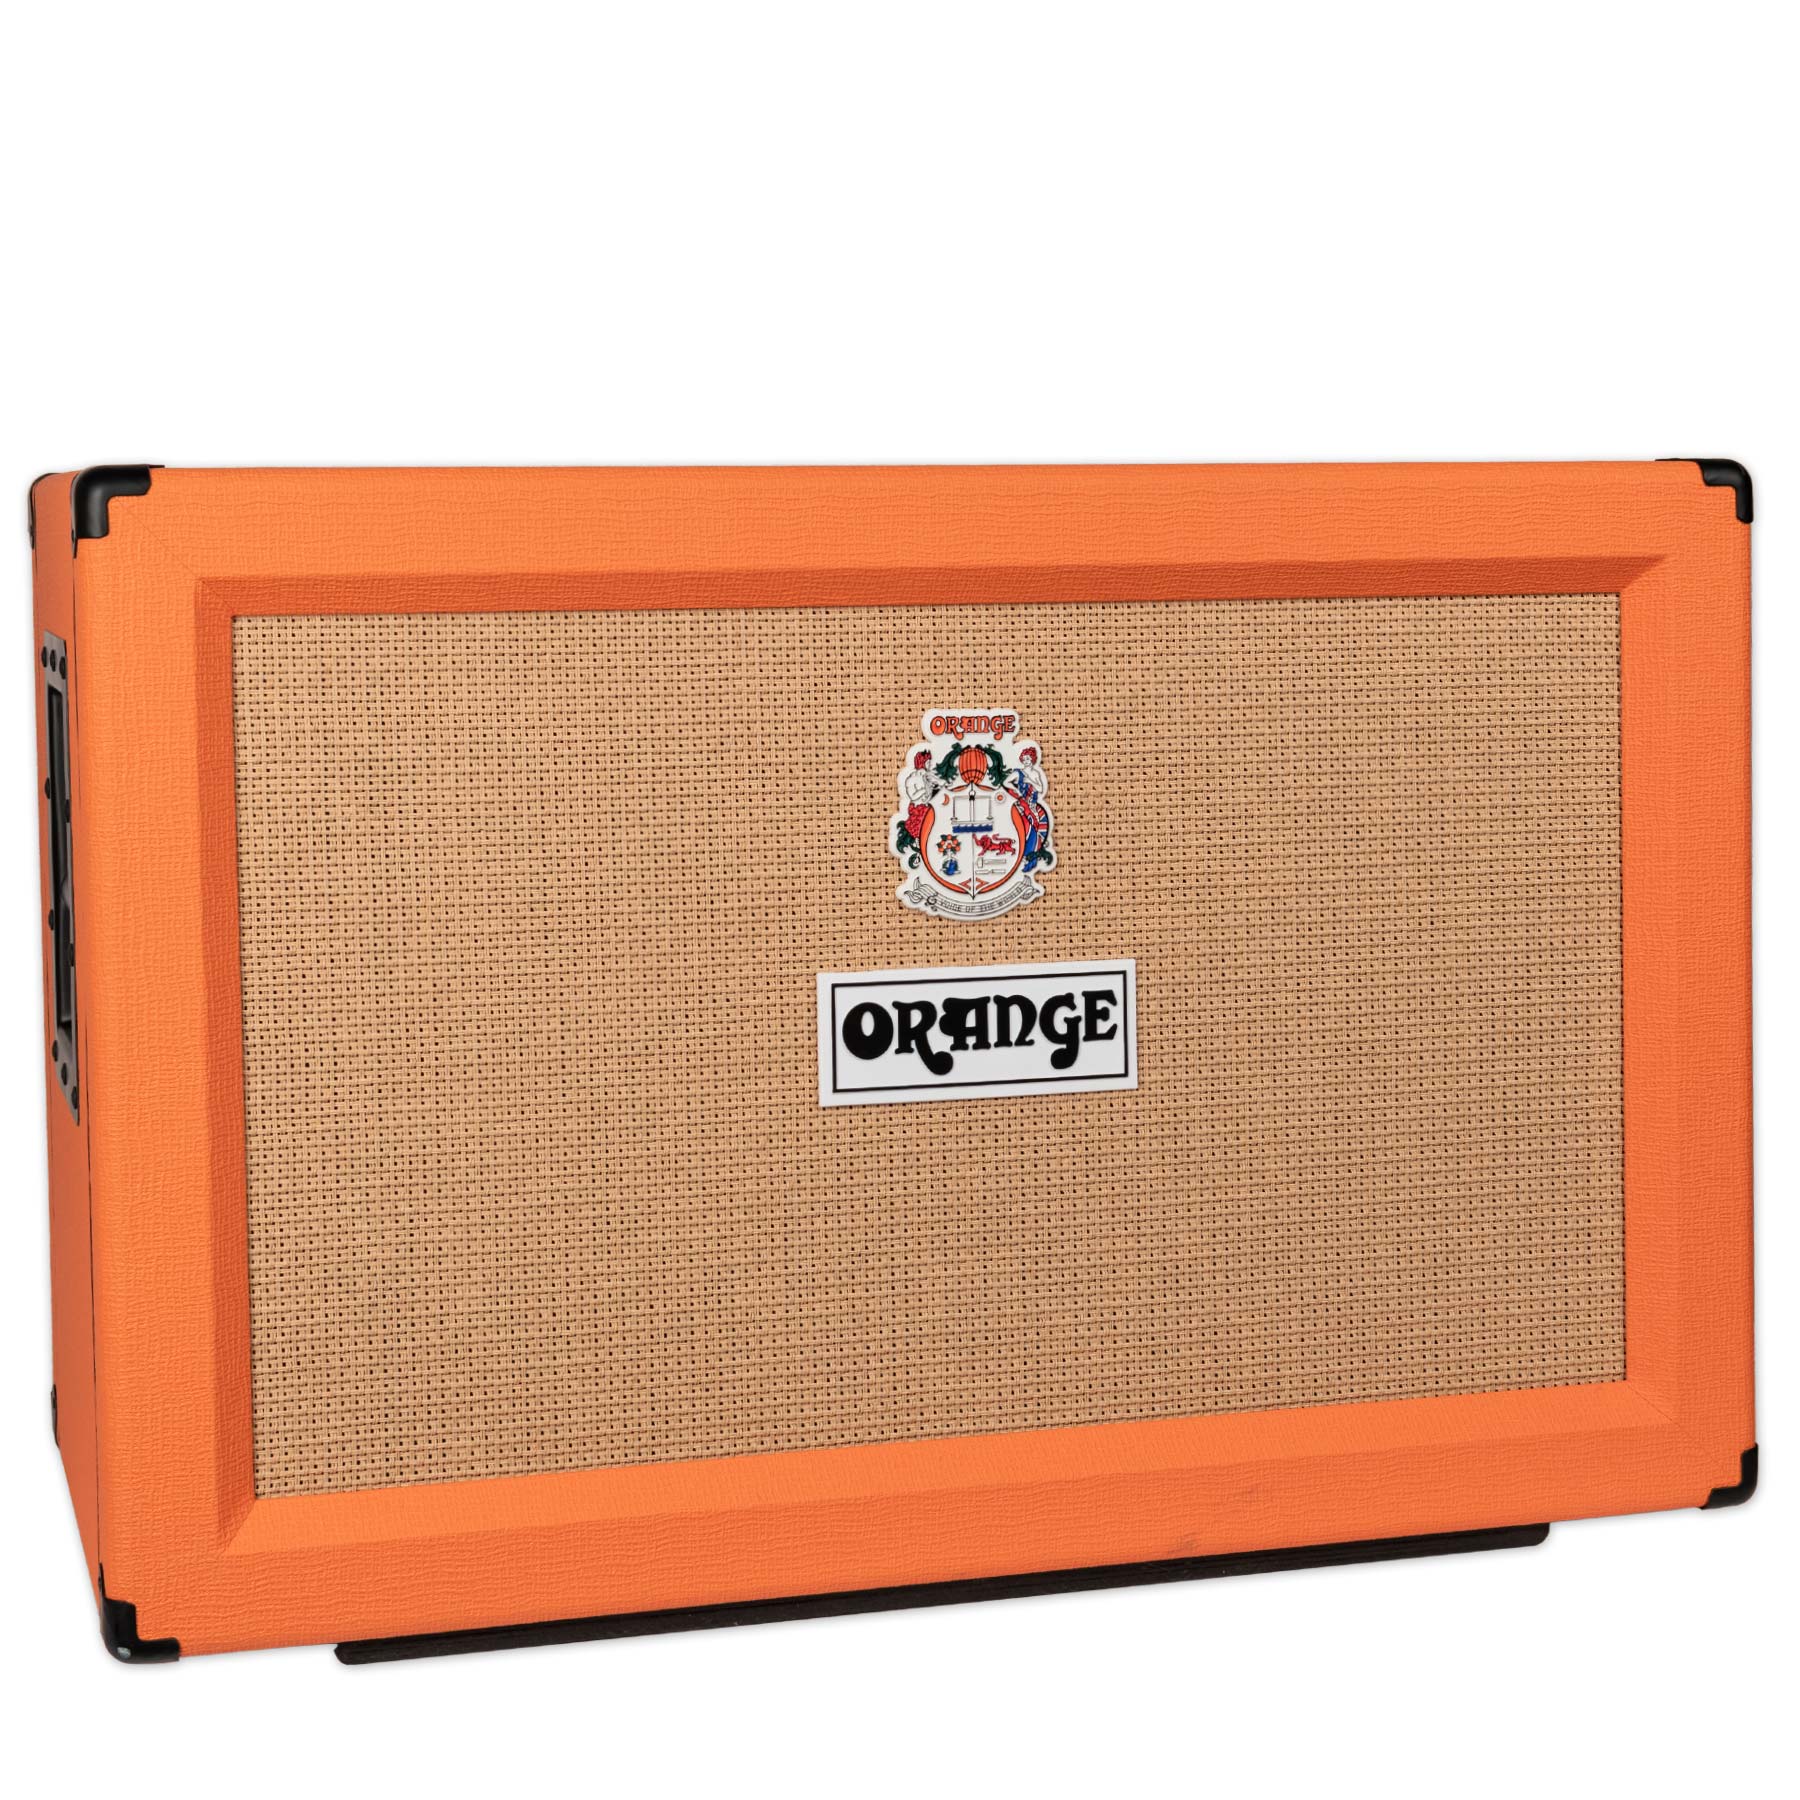 Used Orange Ppc212 Guitar 2x12 Guitar Cabinet Stang Guitars